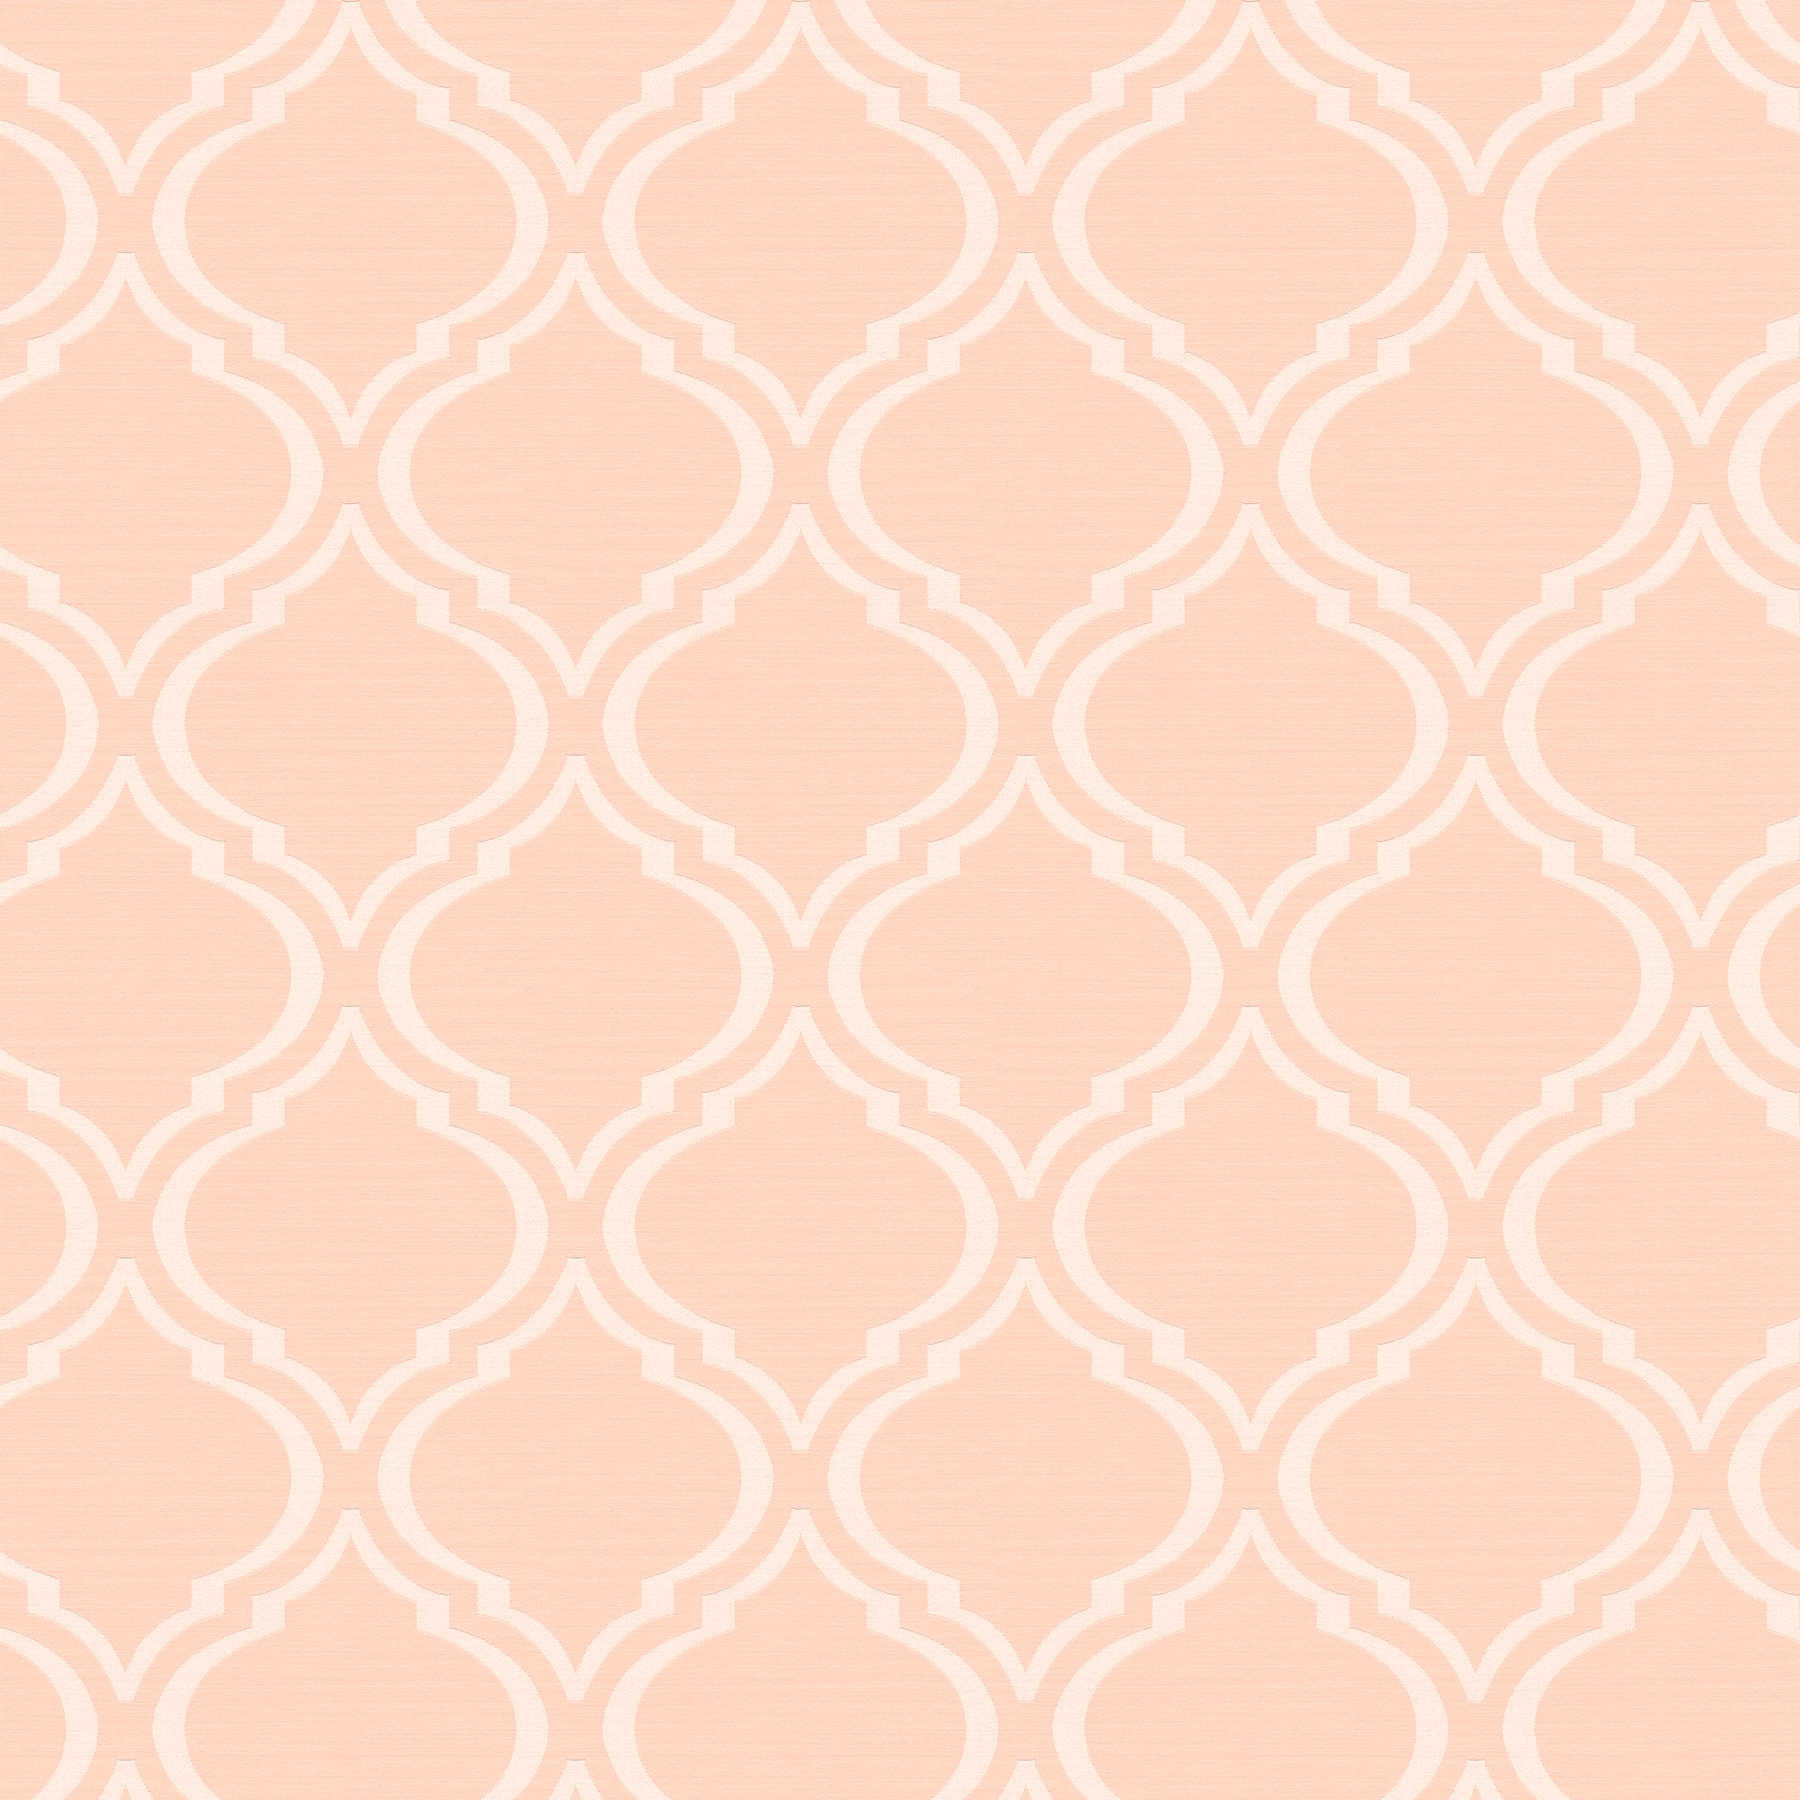 Tapete Retro Design mit Art Deco Muster & Glanzeffekt – Rosa, orange, Weiß
